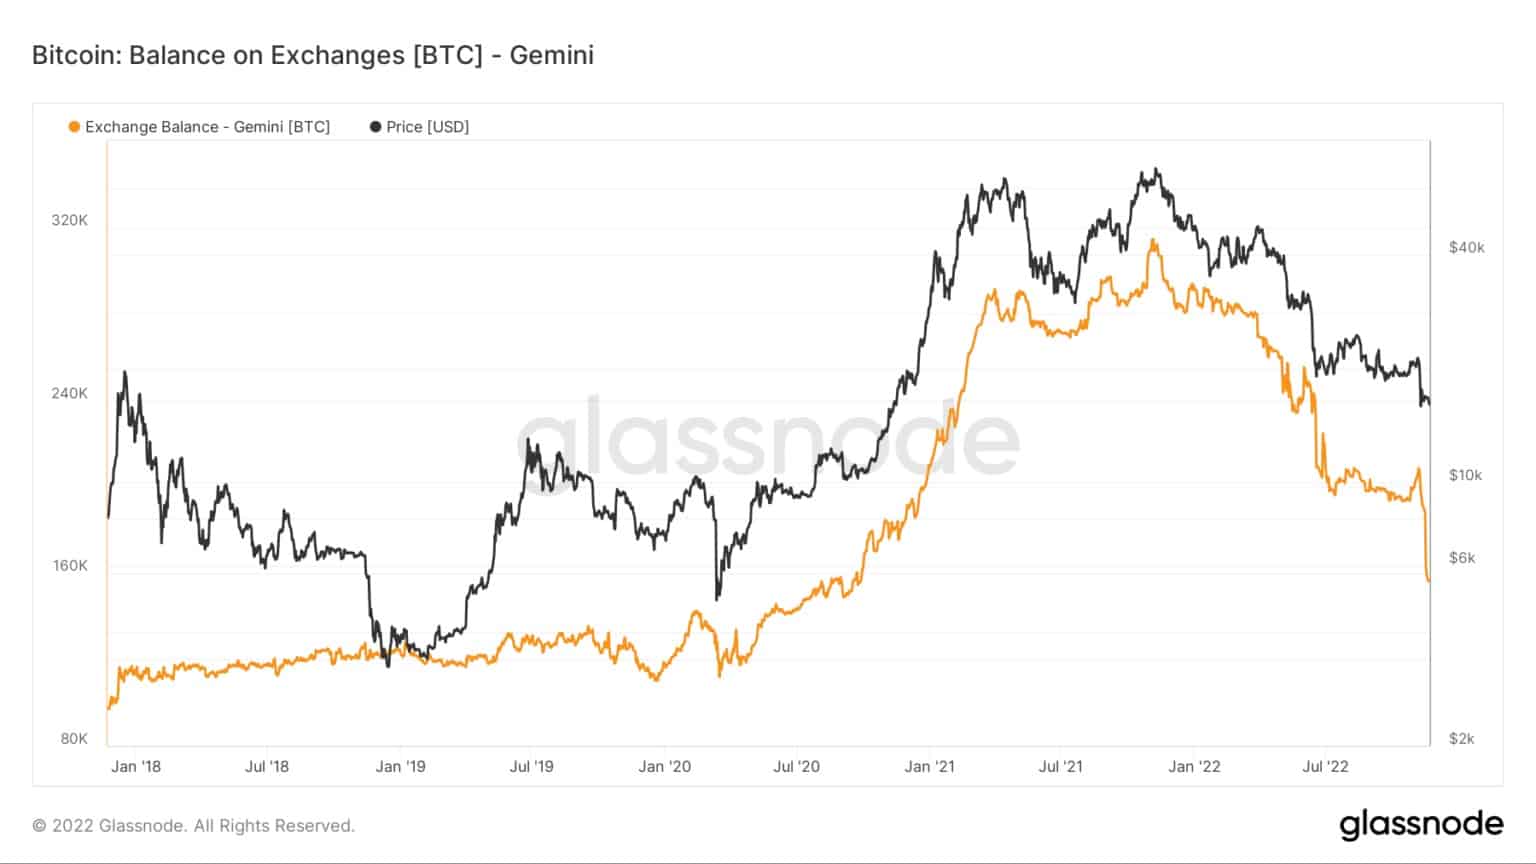 Grafico che mostra i saldi Bitcoin sull'exchange Gemini dal 2016 al 2022 (Fonte: Glassnode)